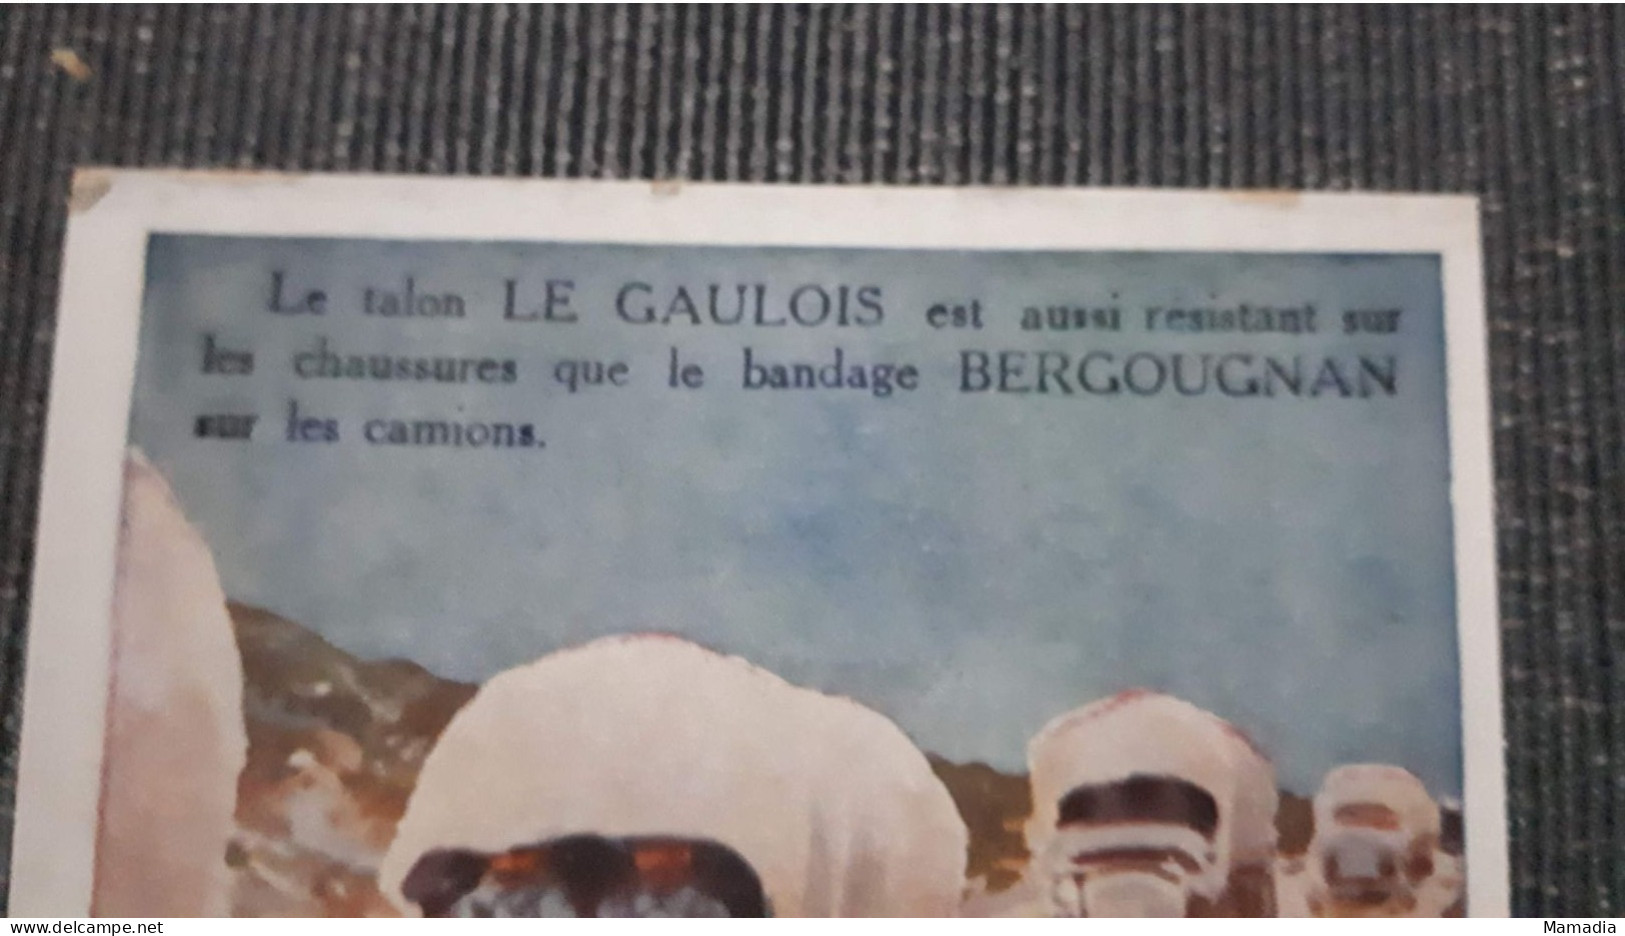 CARTE PUBLICITAIRE CAOUTCHOUC BANDAGES ETS BERGOUGNAN TALON LE GAULOIS  T. SALA - Advertising